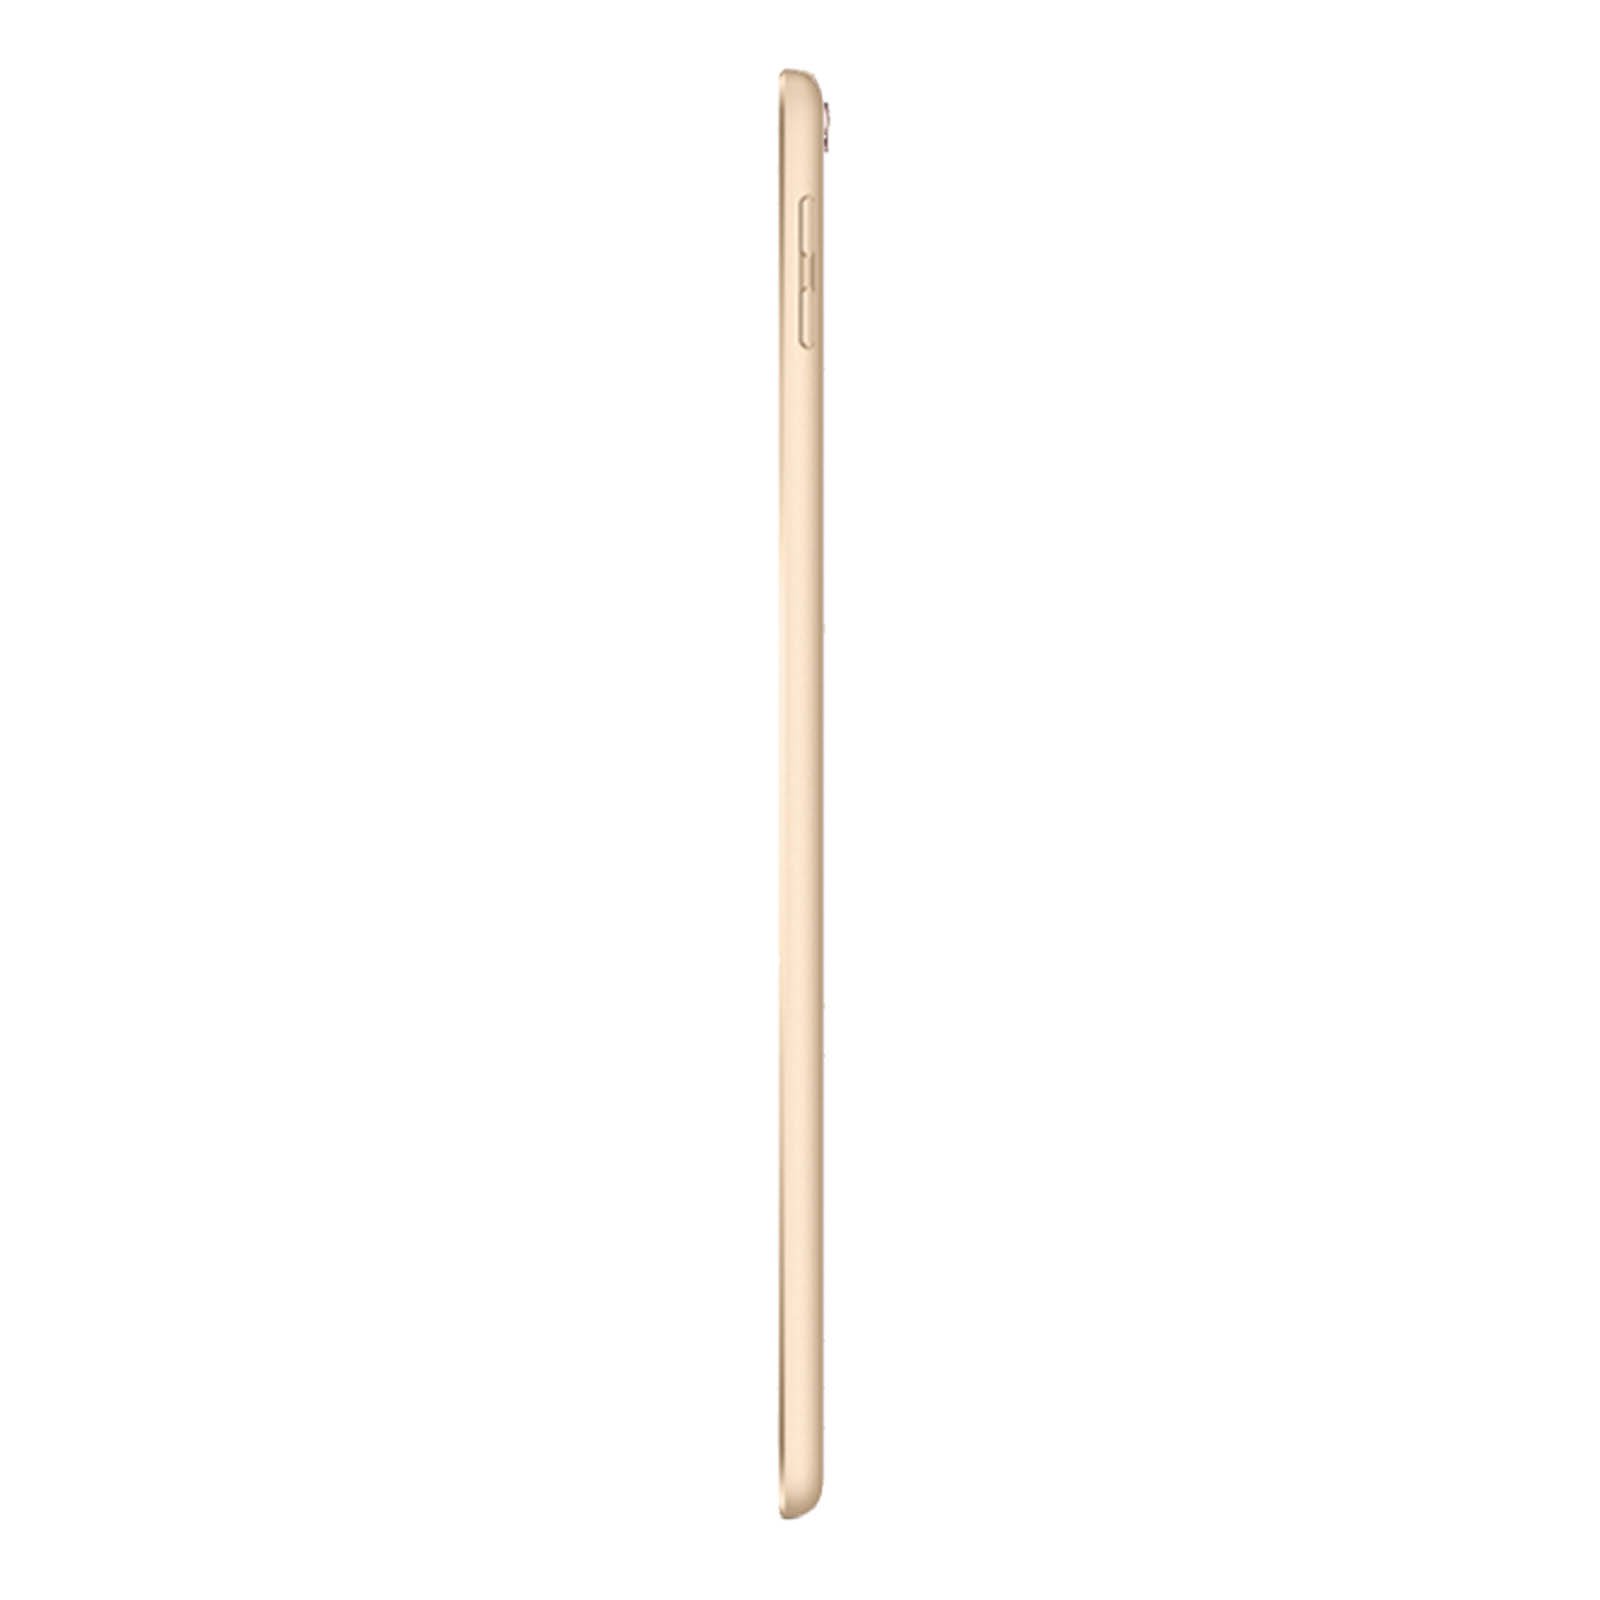 iPad Pro 10.5 Inch 512GB Gold Good - WiFi